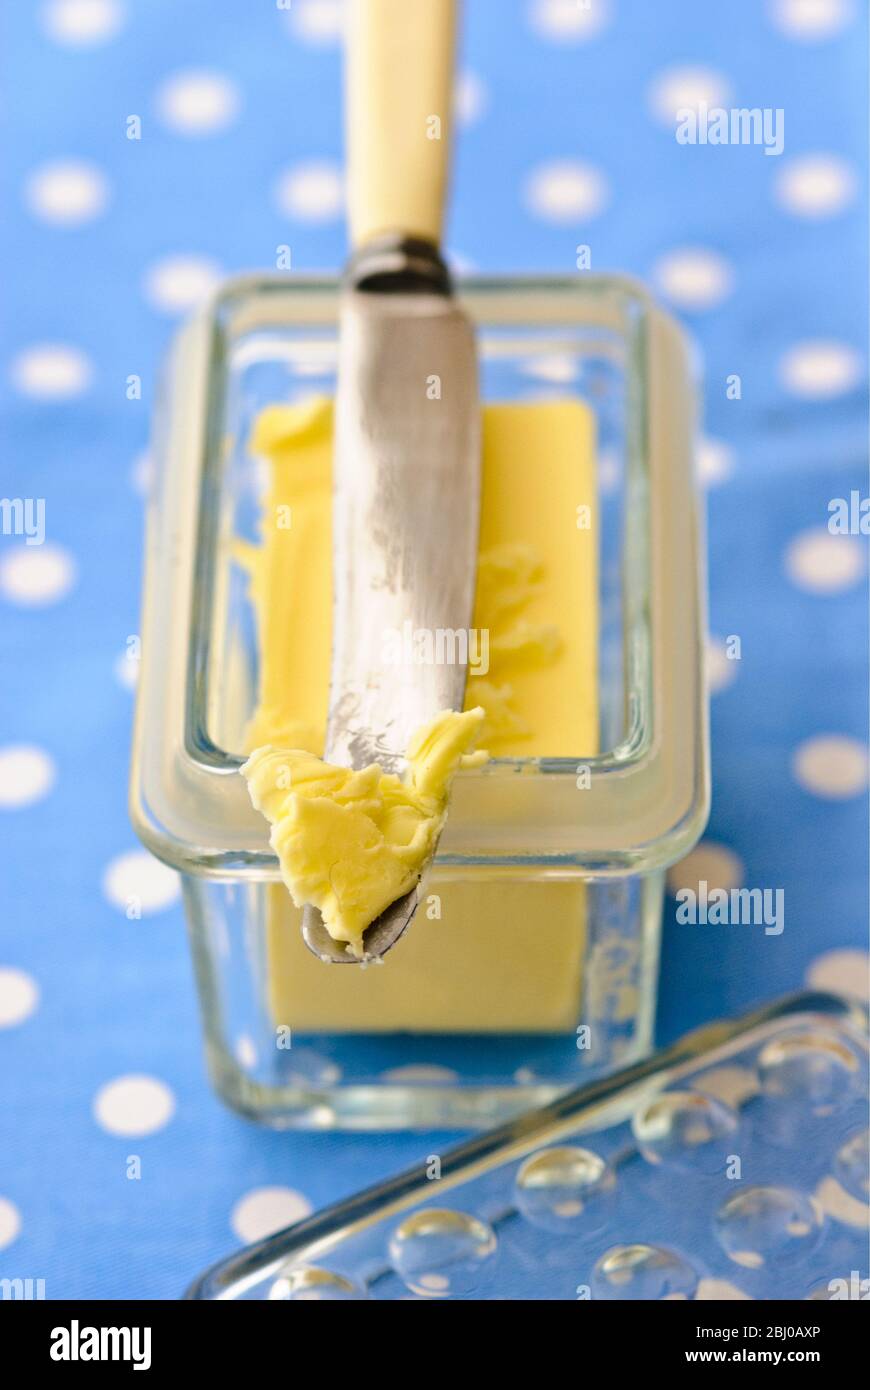 Butterdose aus Glas mit Buttermesser auf blau-weiß gepunkteten Tuch - Stockfoto